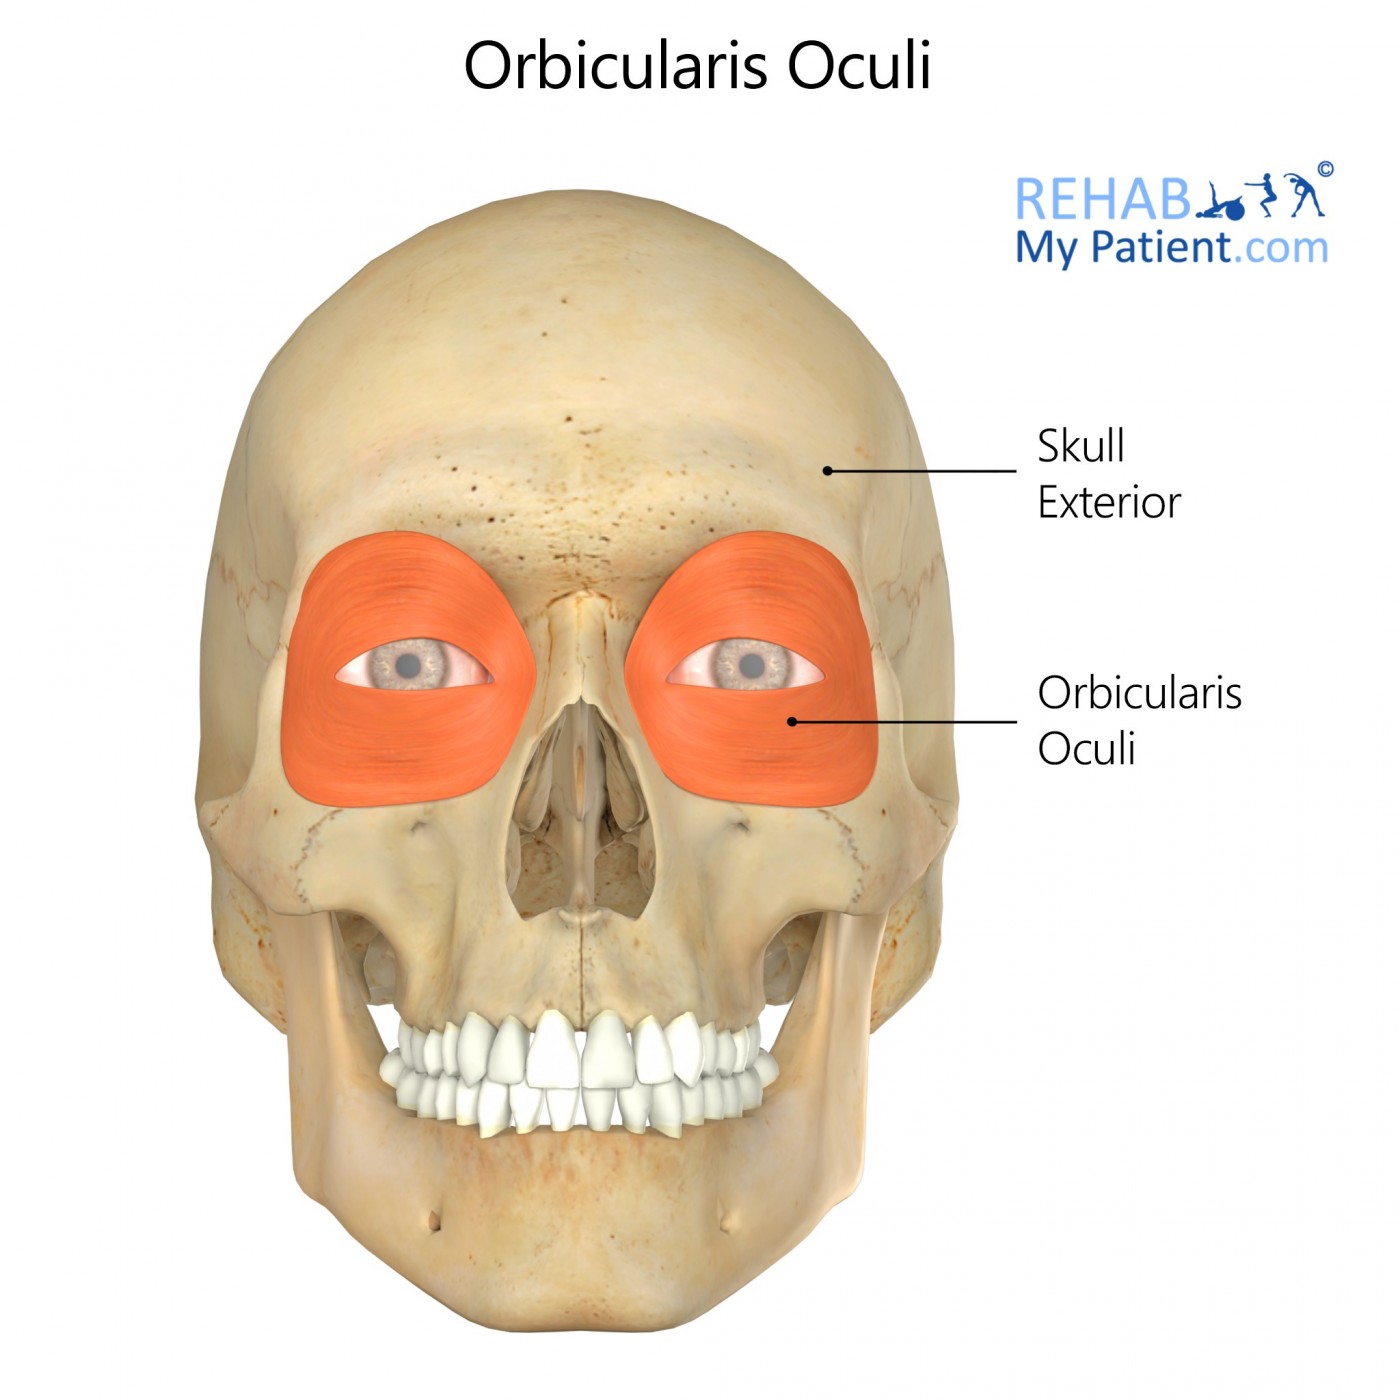 Orbicularis Oculi